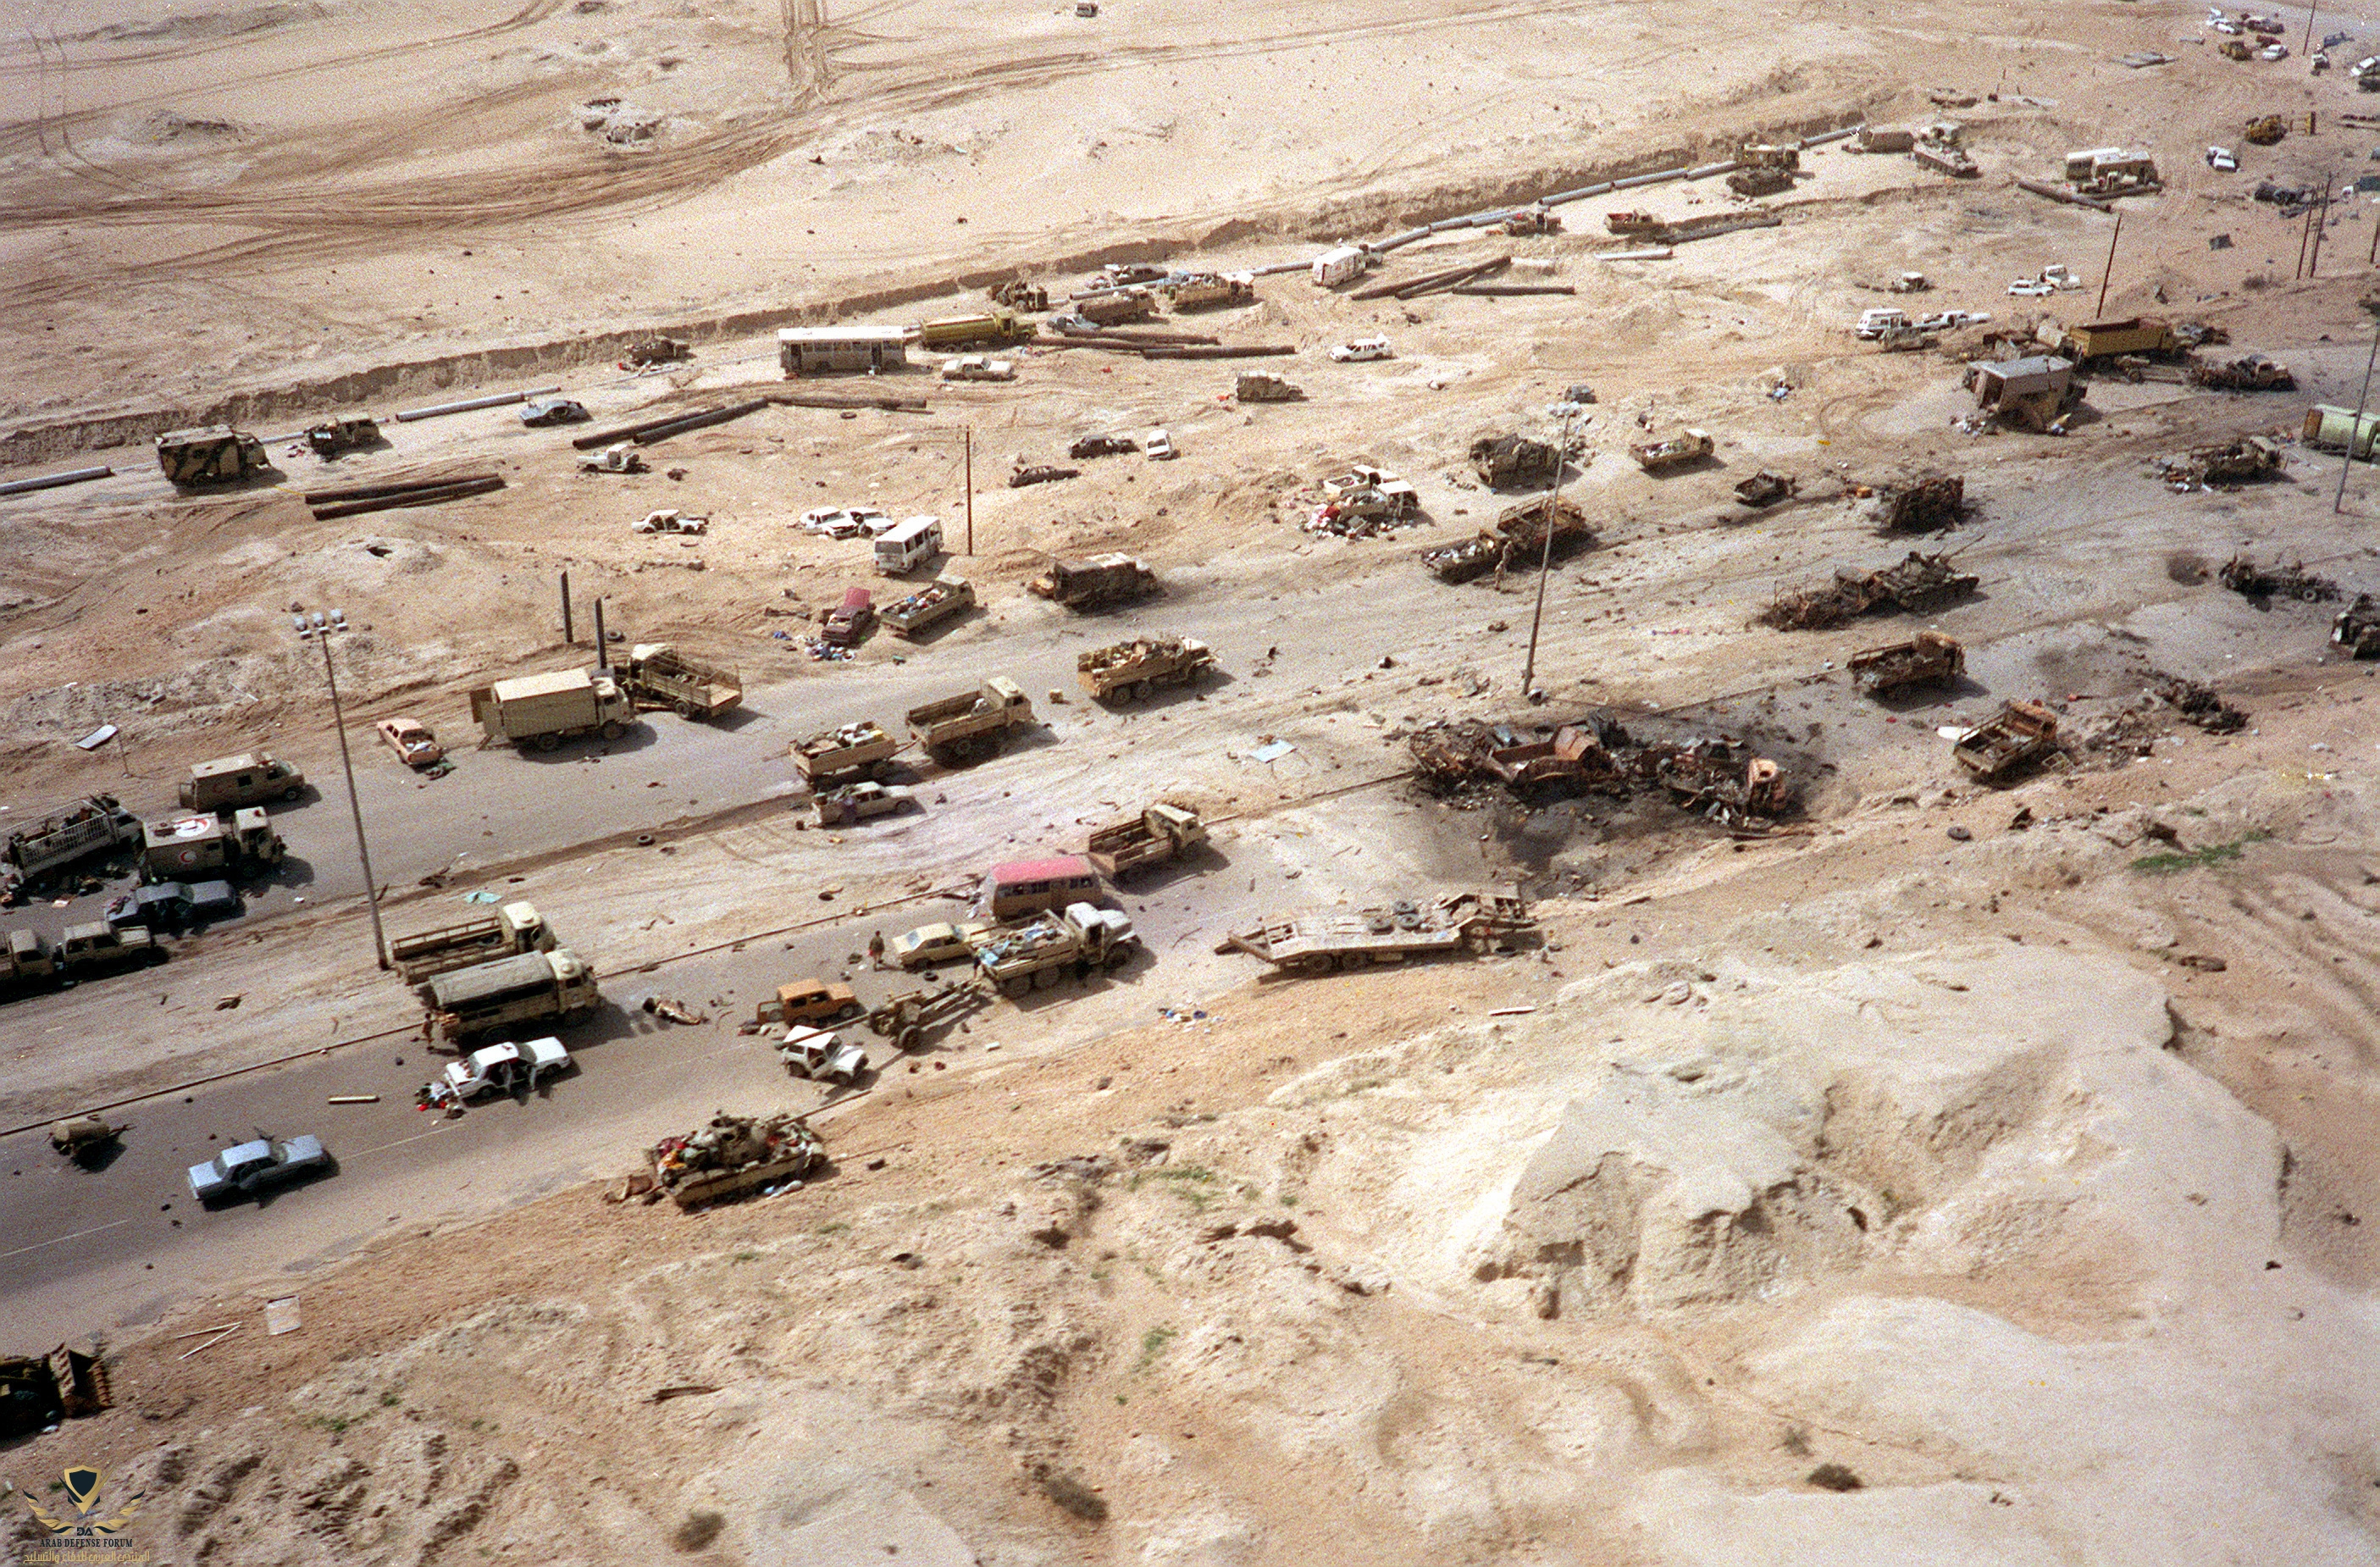 Gulf-War-Desert-Storm-Iraq-tanks-1991.jpg